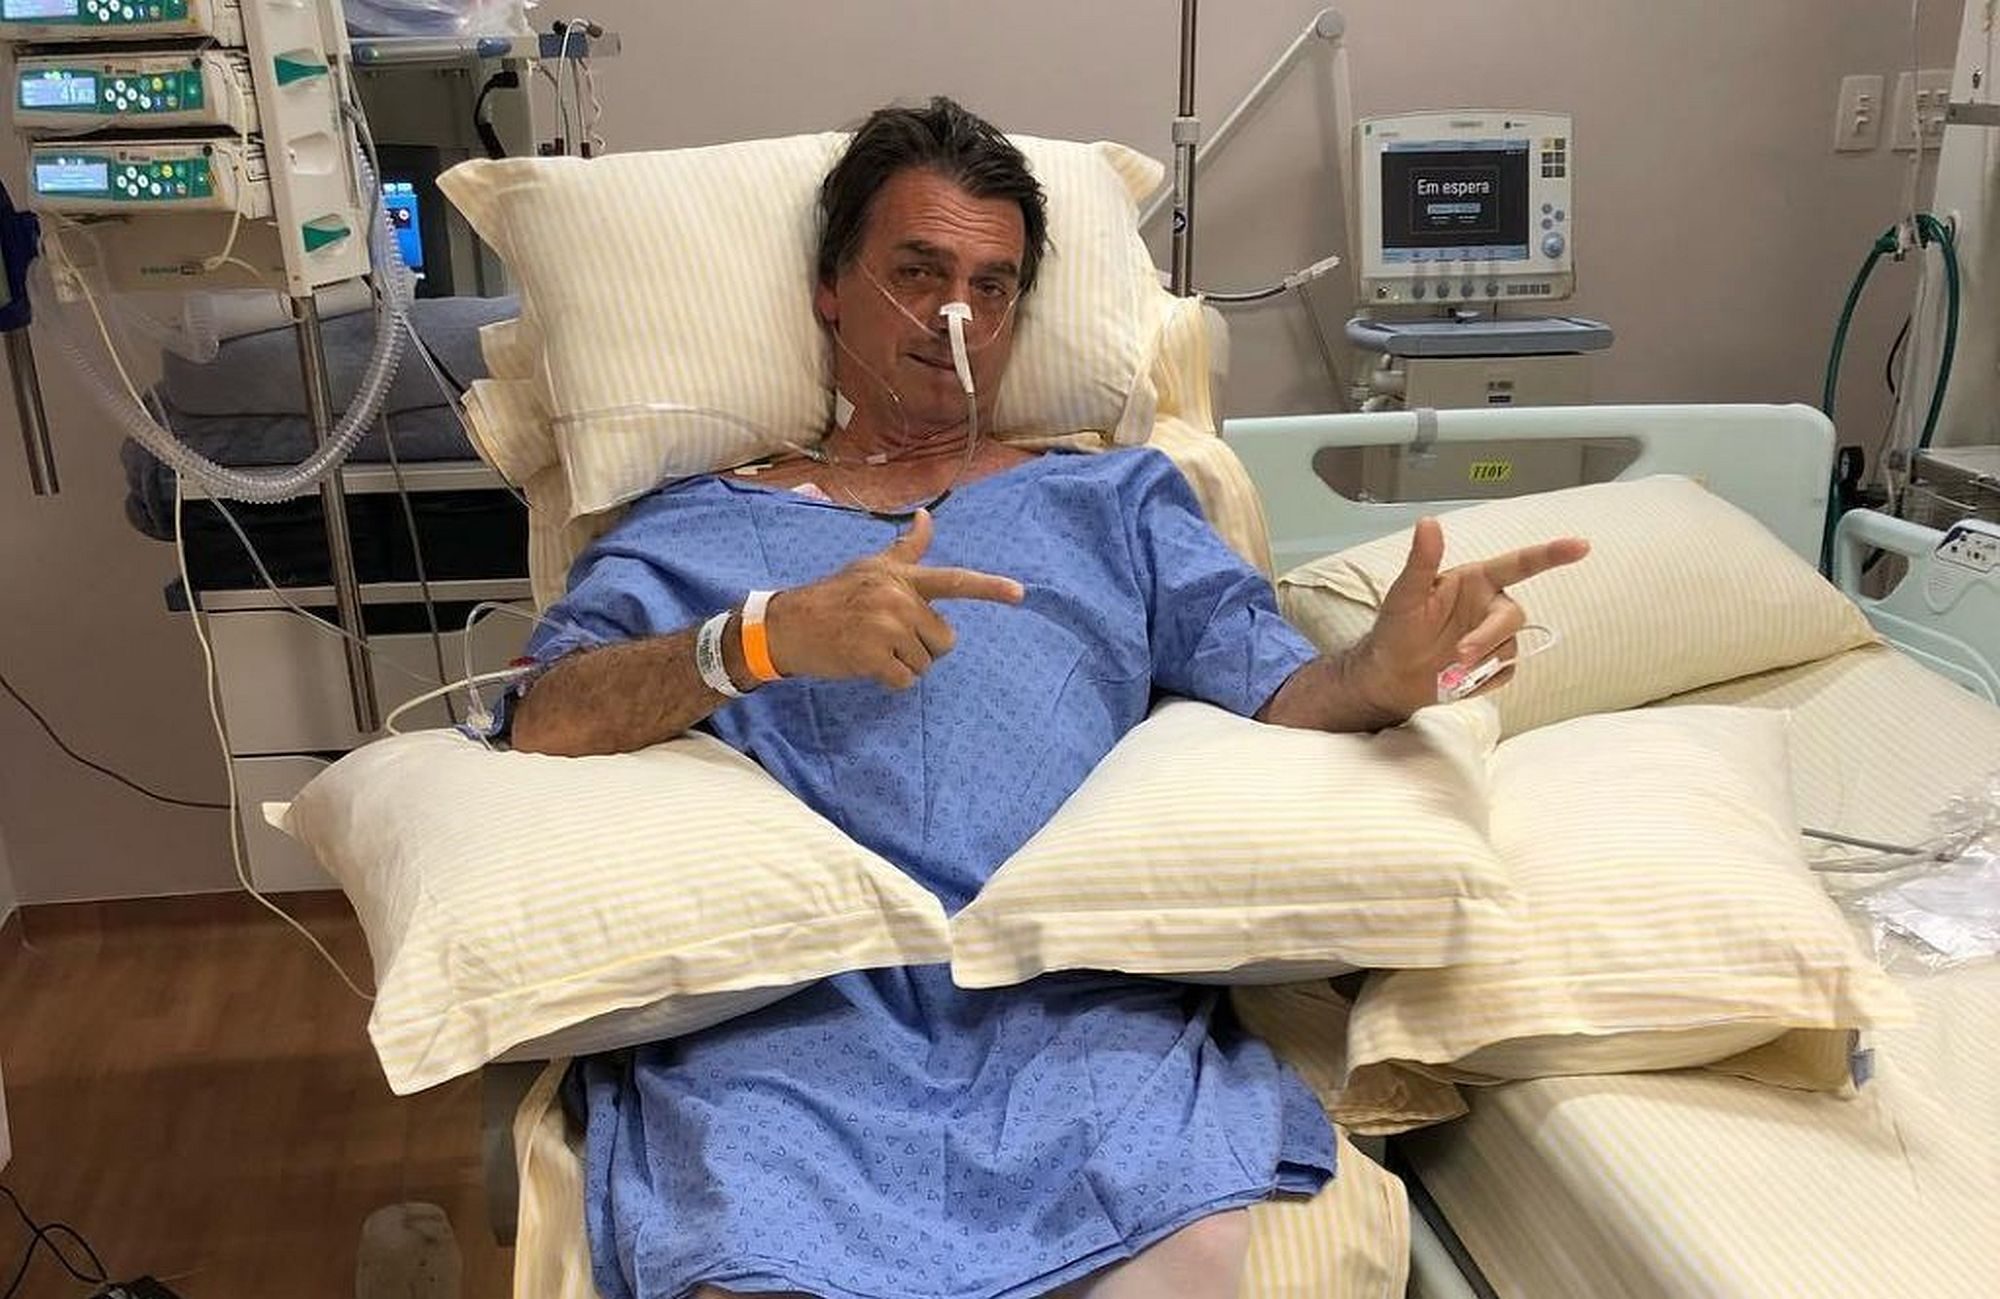 Jair Bolsonaro giving imaginary shots at hospital bed - Photo by Flavio Bolsonaro, son of the presidential candidate